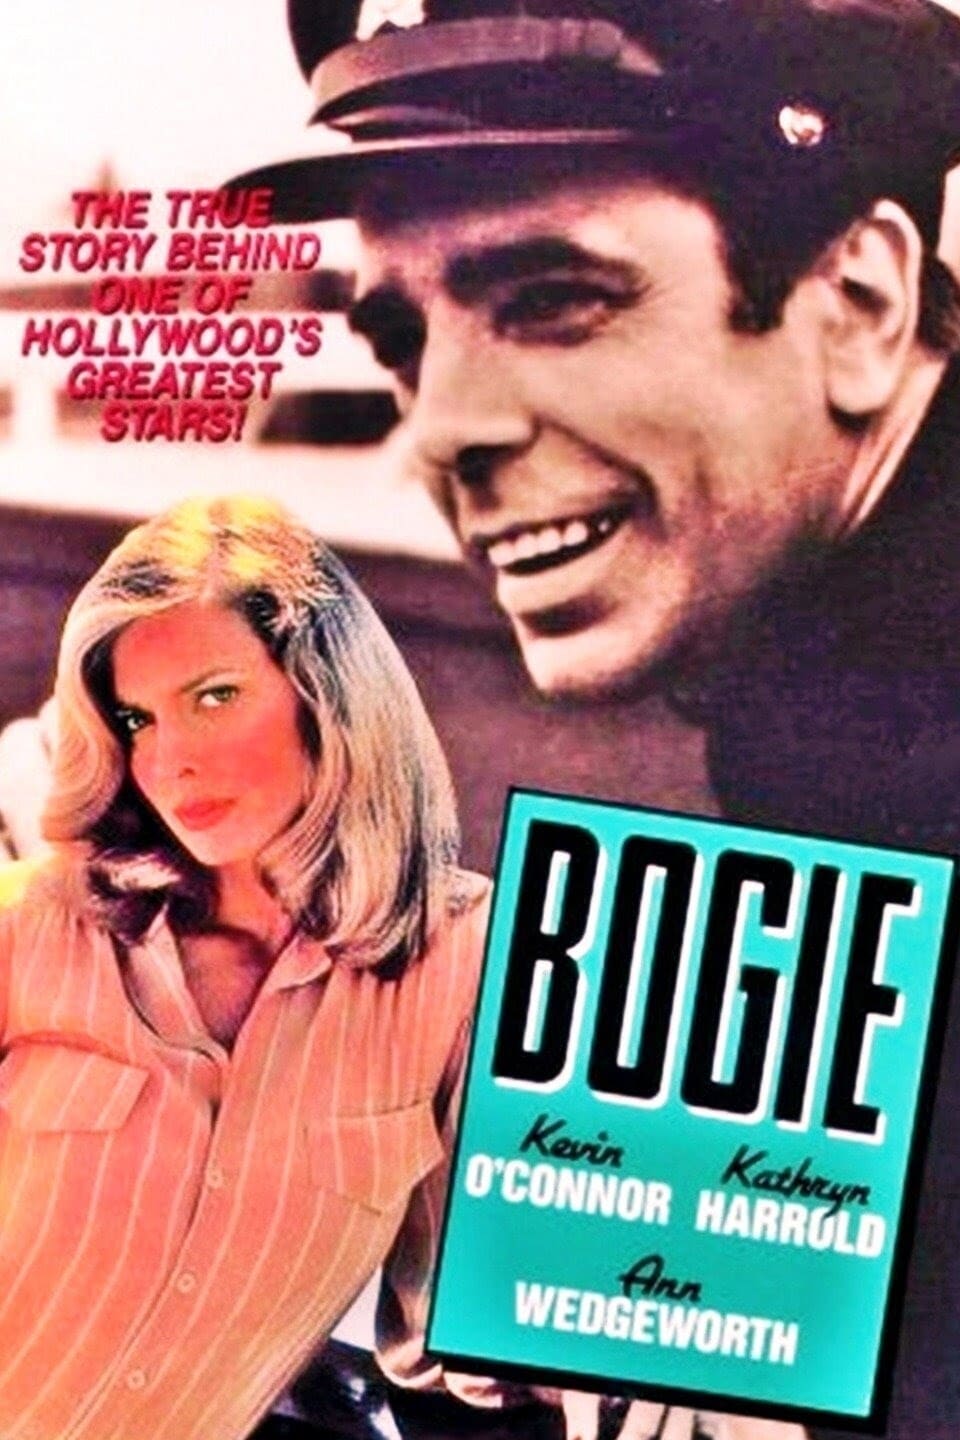 Bogie (1980)